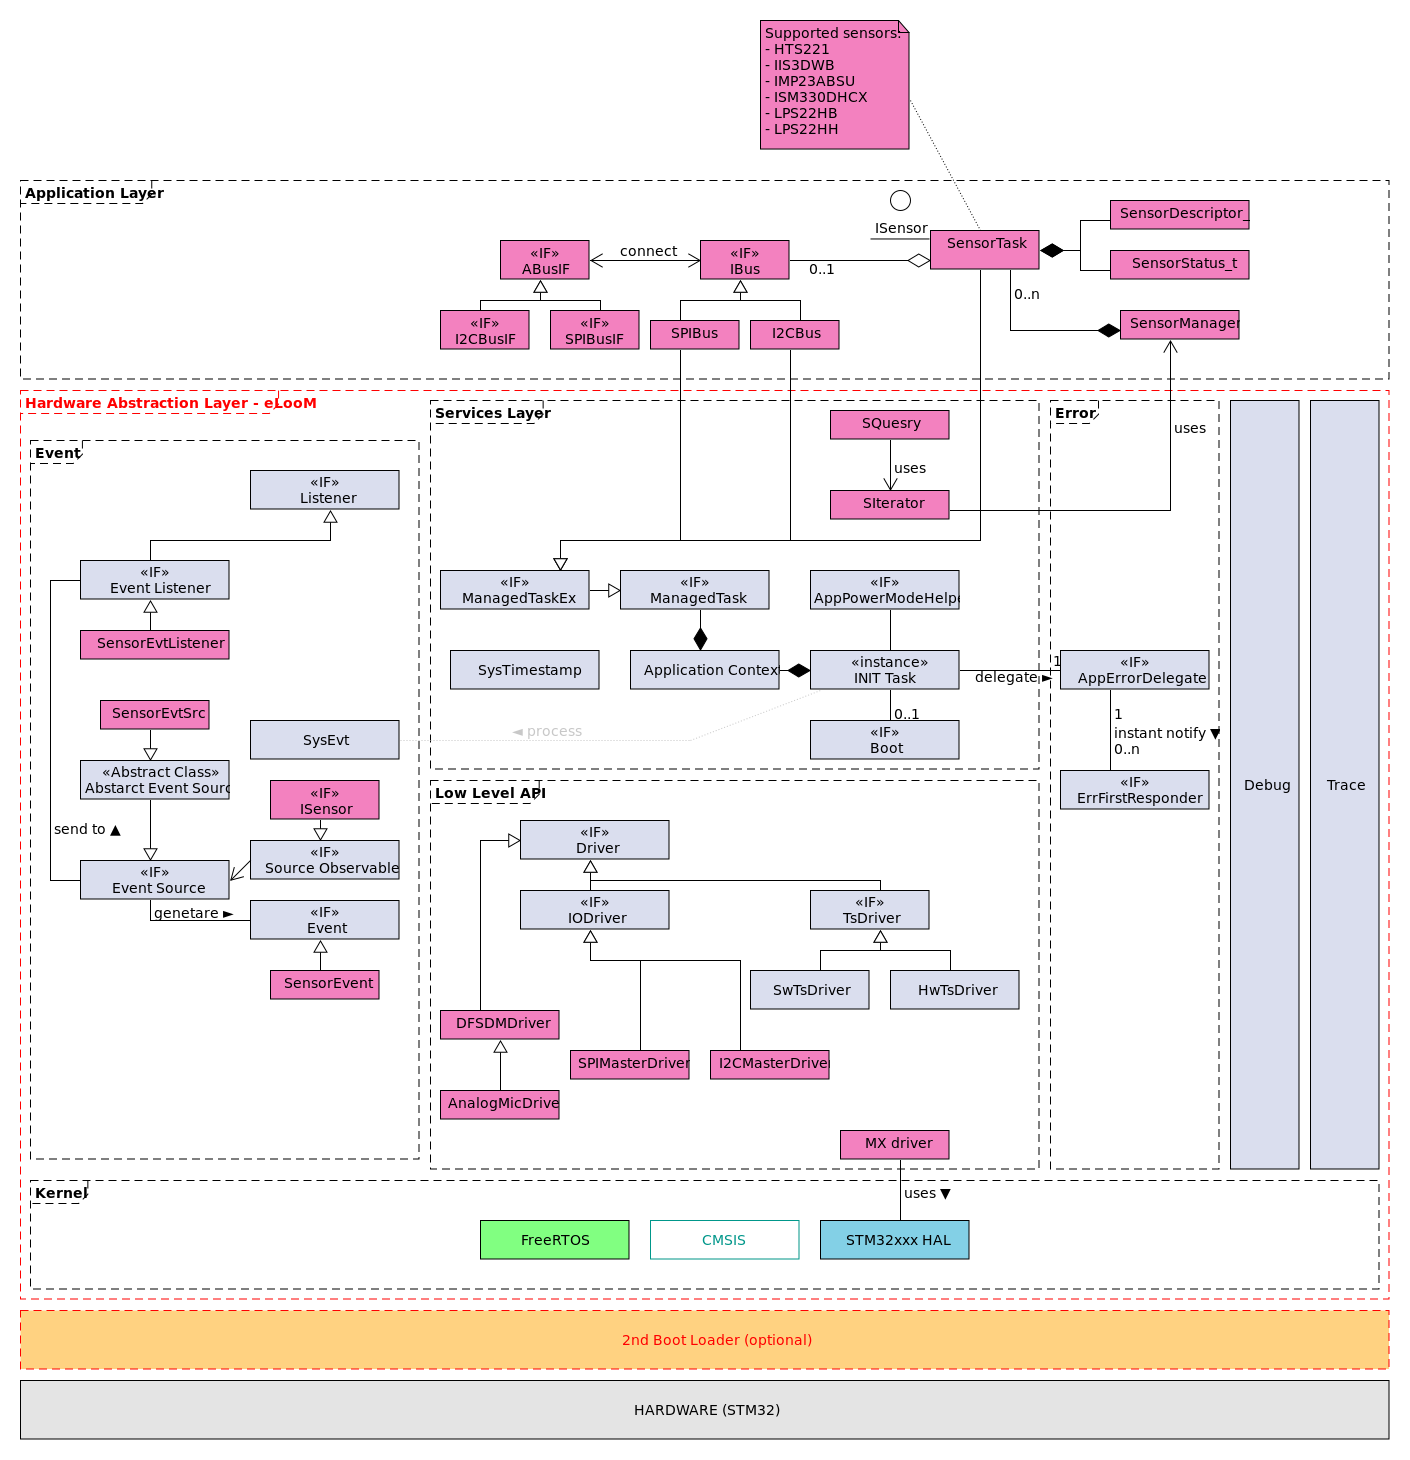 Sensor Manager - high level class diagram.